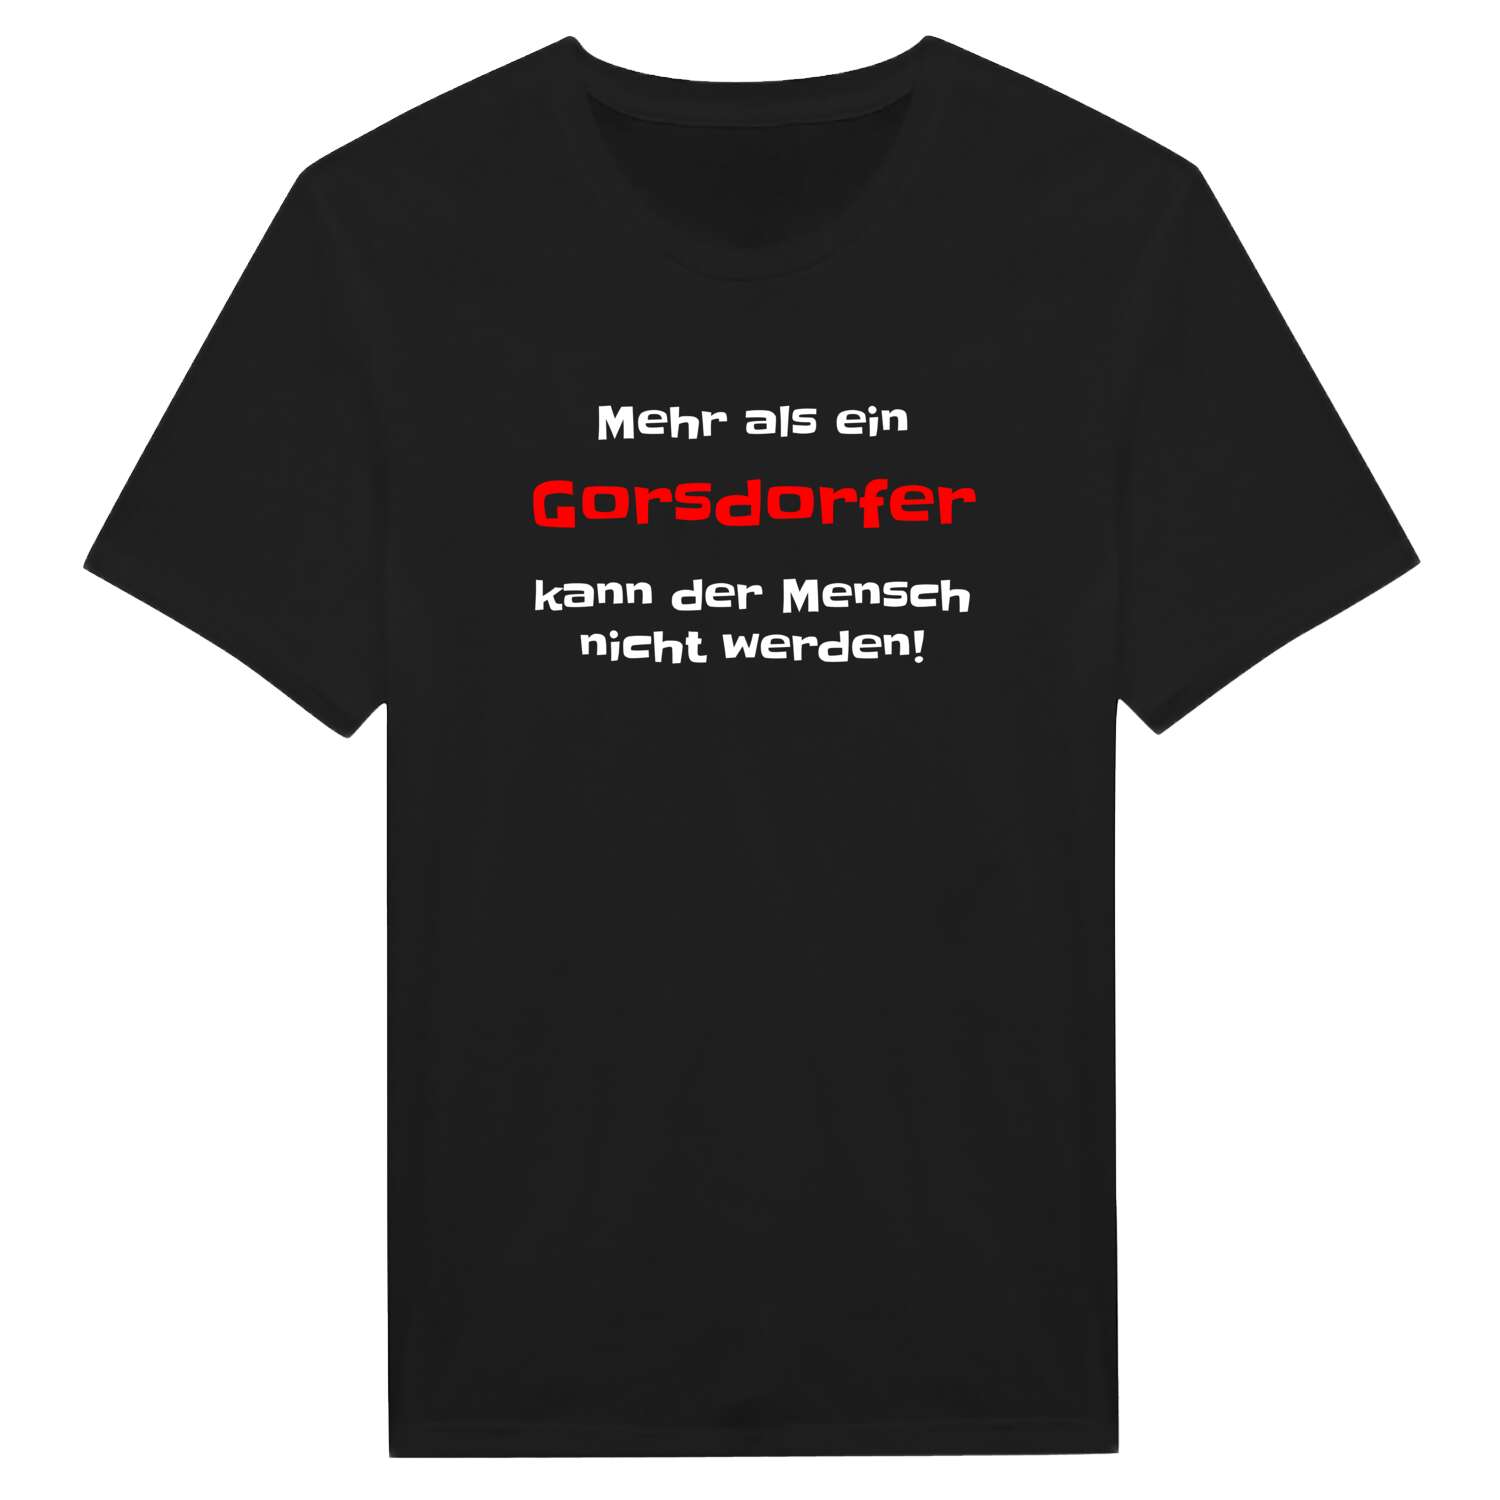 Gorsdorf T-Shirt »Mehr als ein«